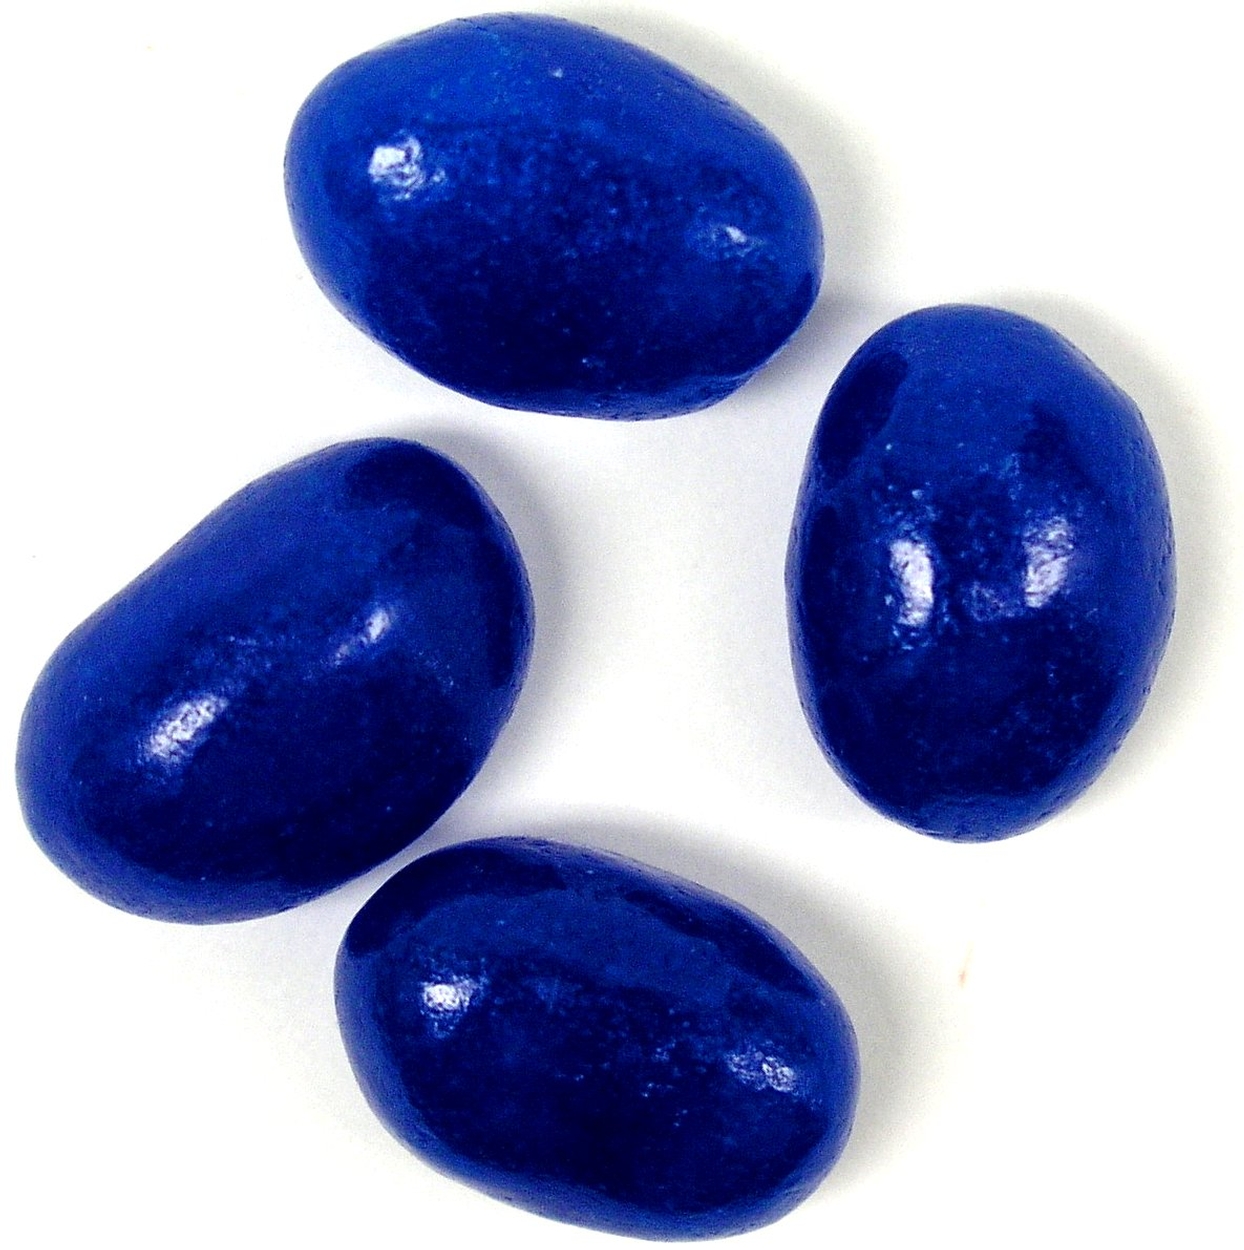 Gimbal's Dark Blue Jelly Beans - Blueberry - 10 LB Case ...